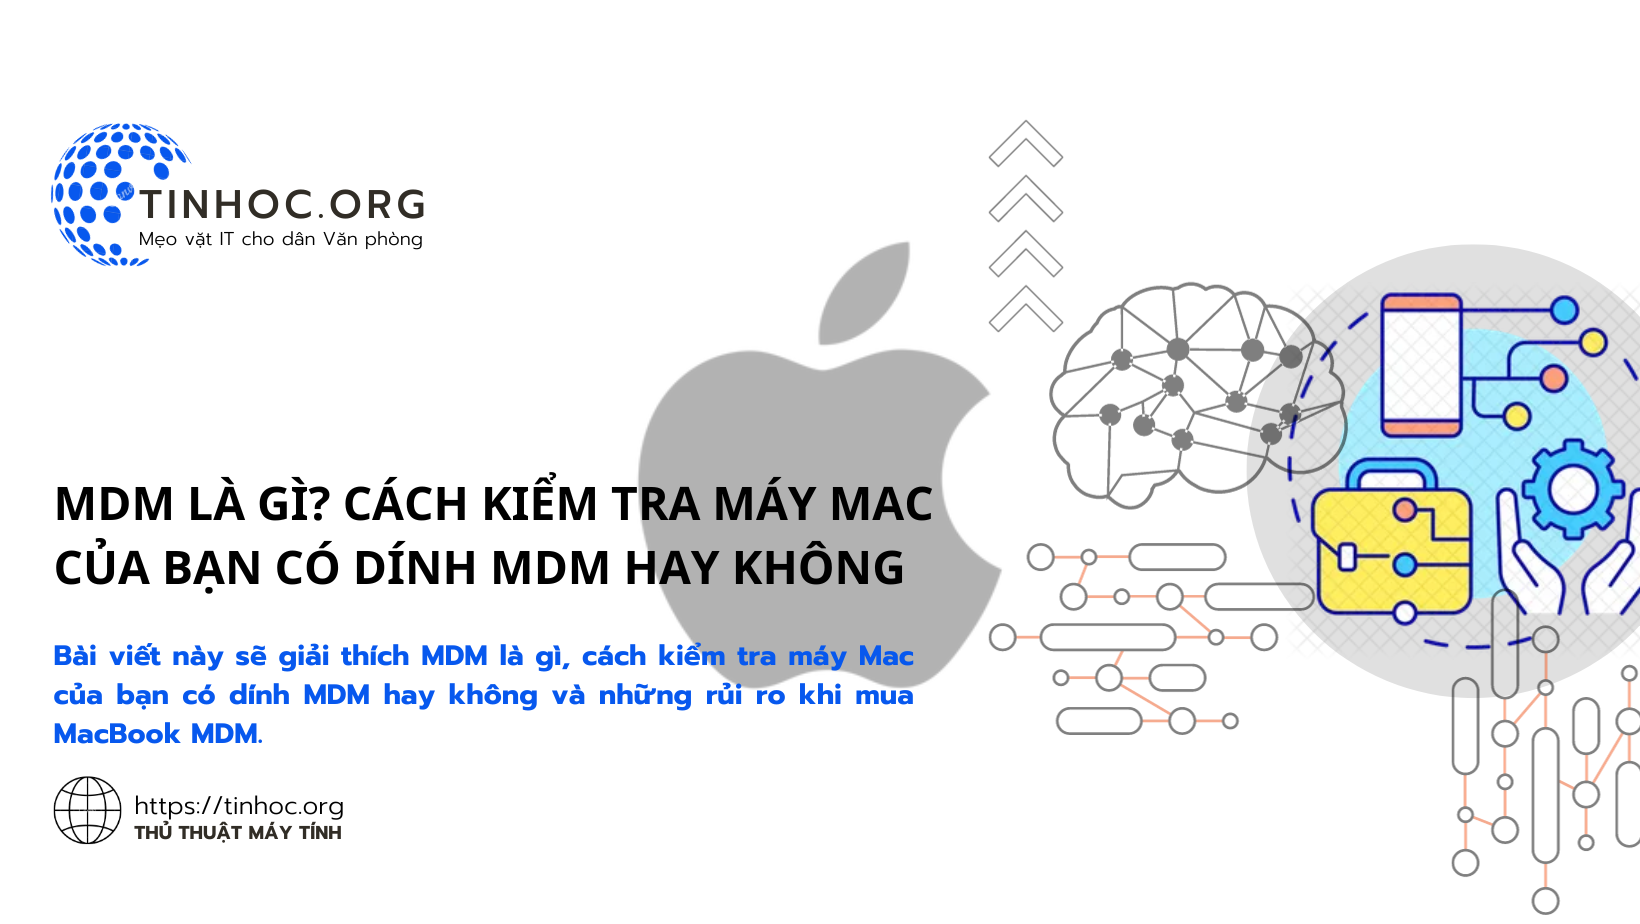 MDM là gì? Cách kiểm tra máy Mac của bạn có dính MDM hay không